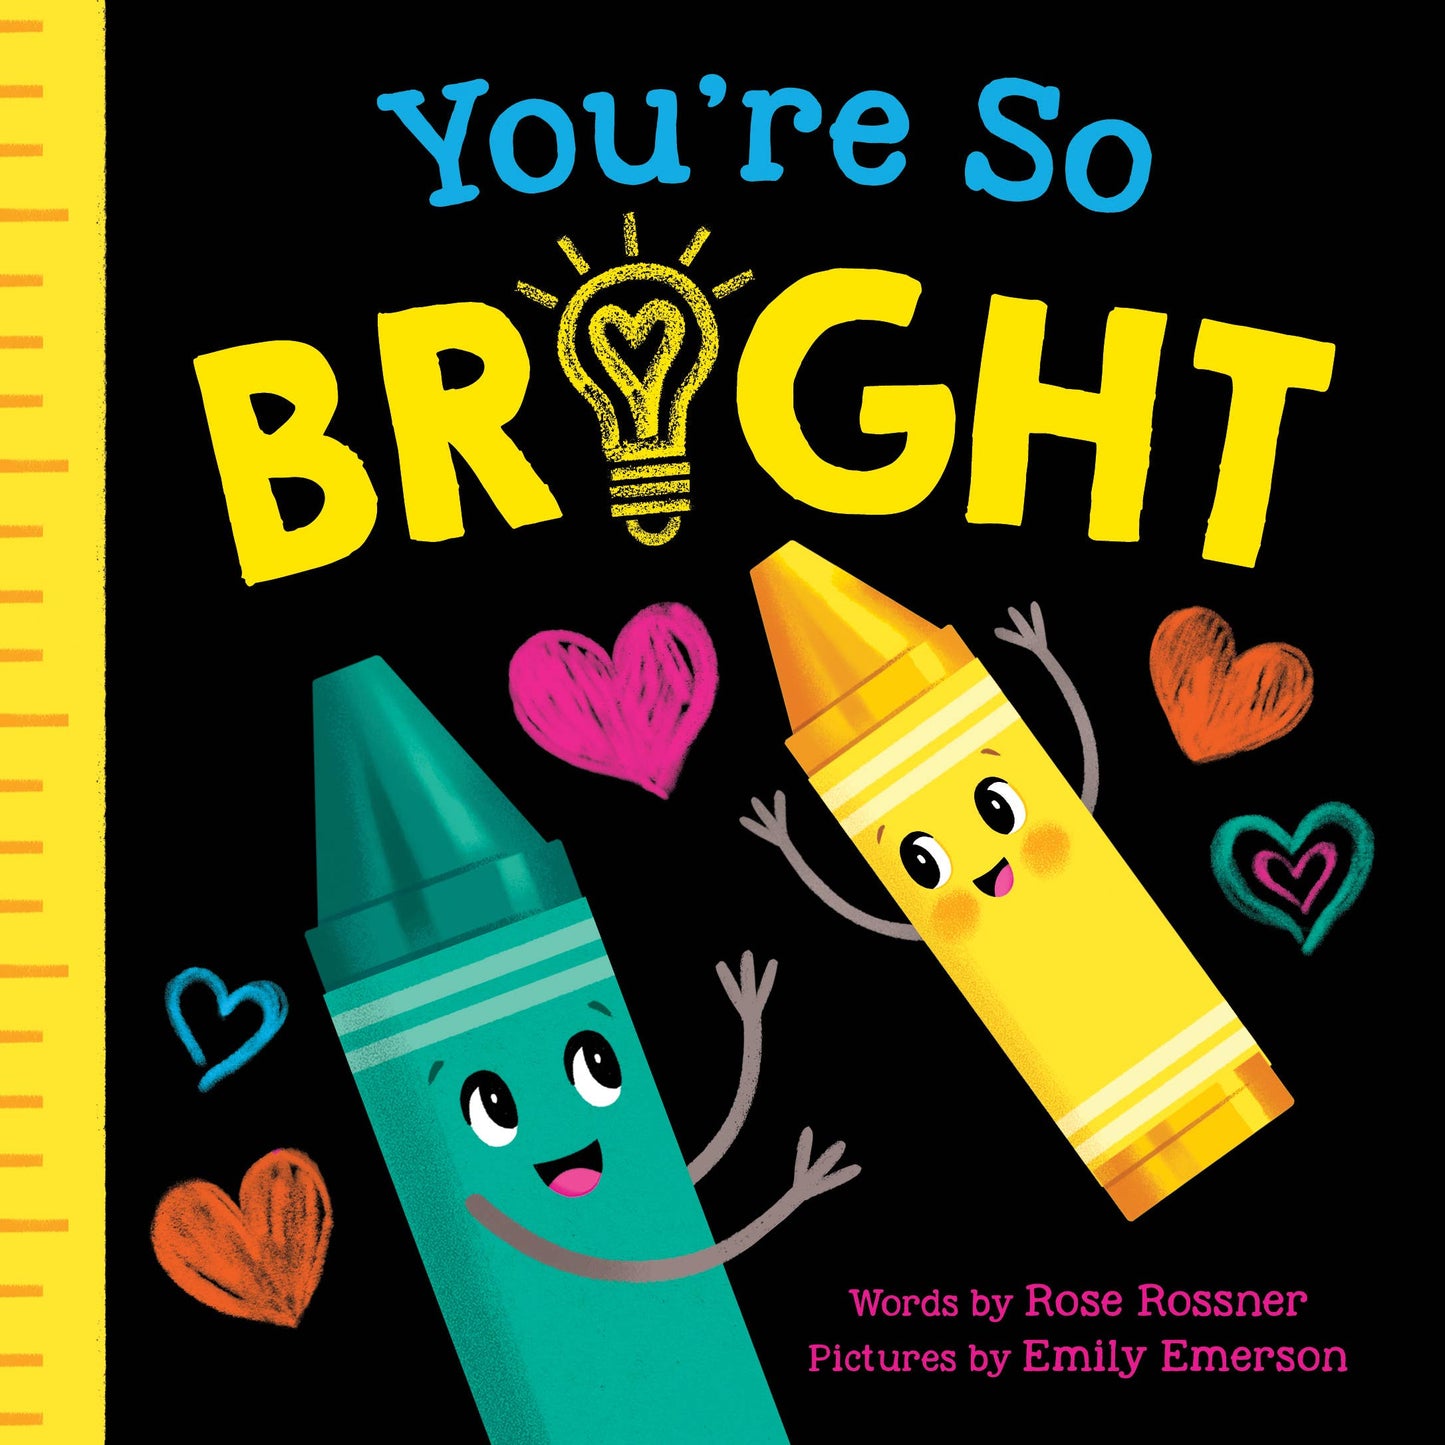 You're So Bright (BBC)